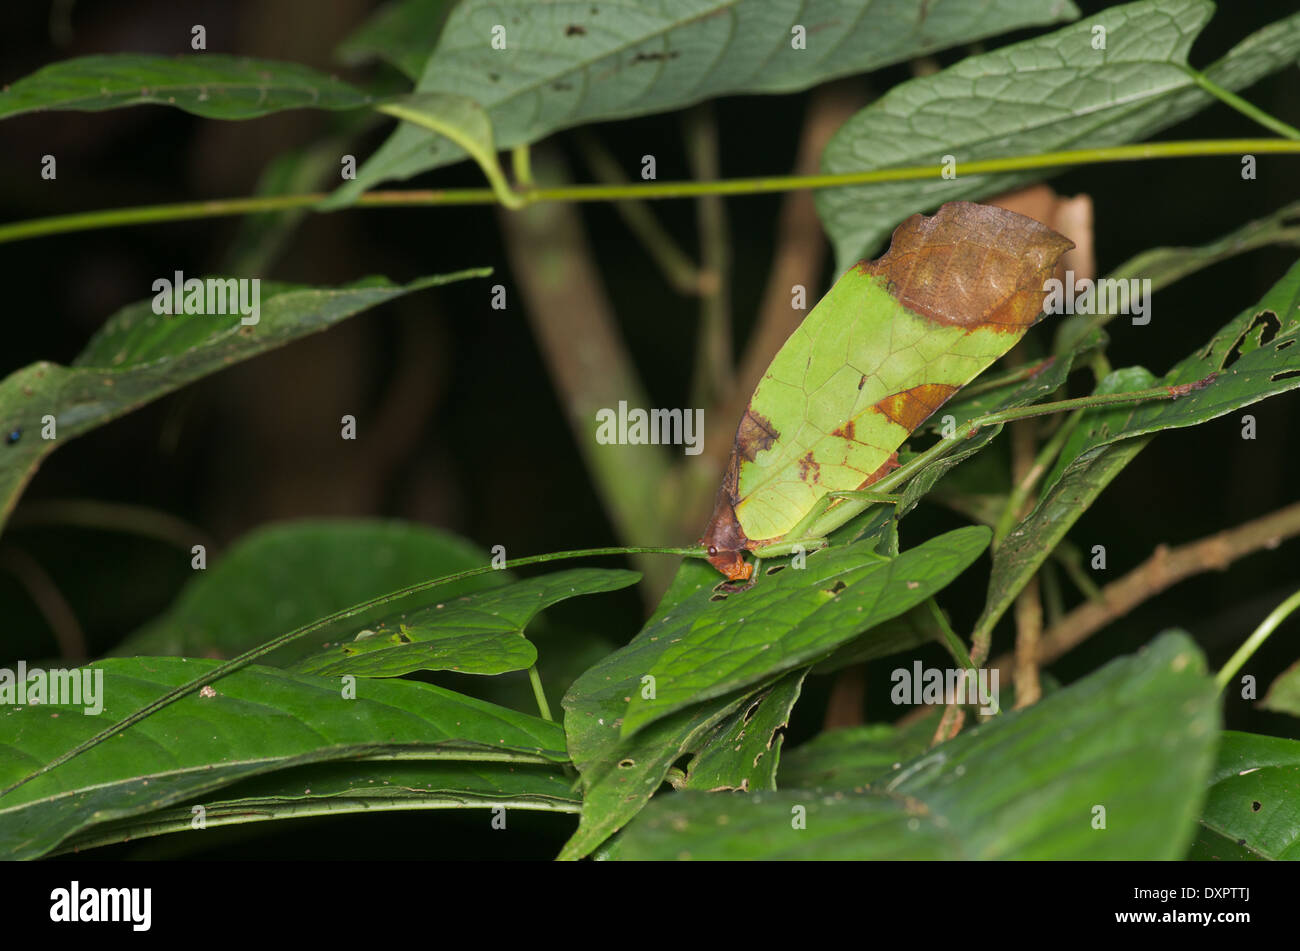 Un notturno katydid camuffato come una foglia morta nella foresta amazzonica in Loreto, Perù. Foto Stock